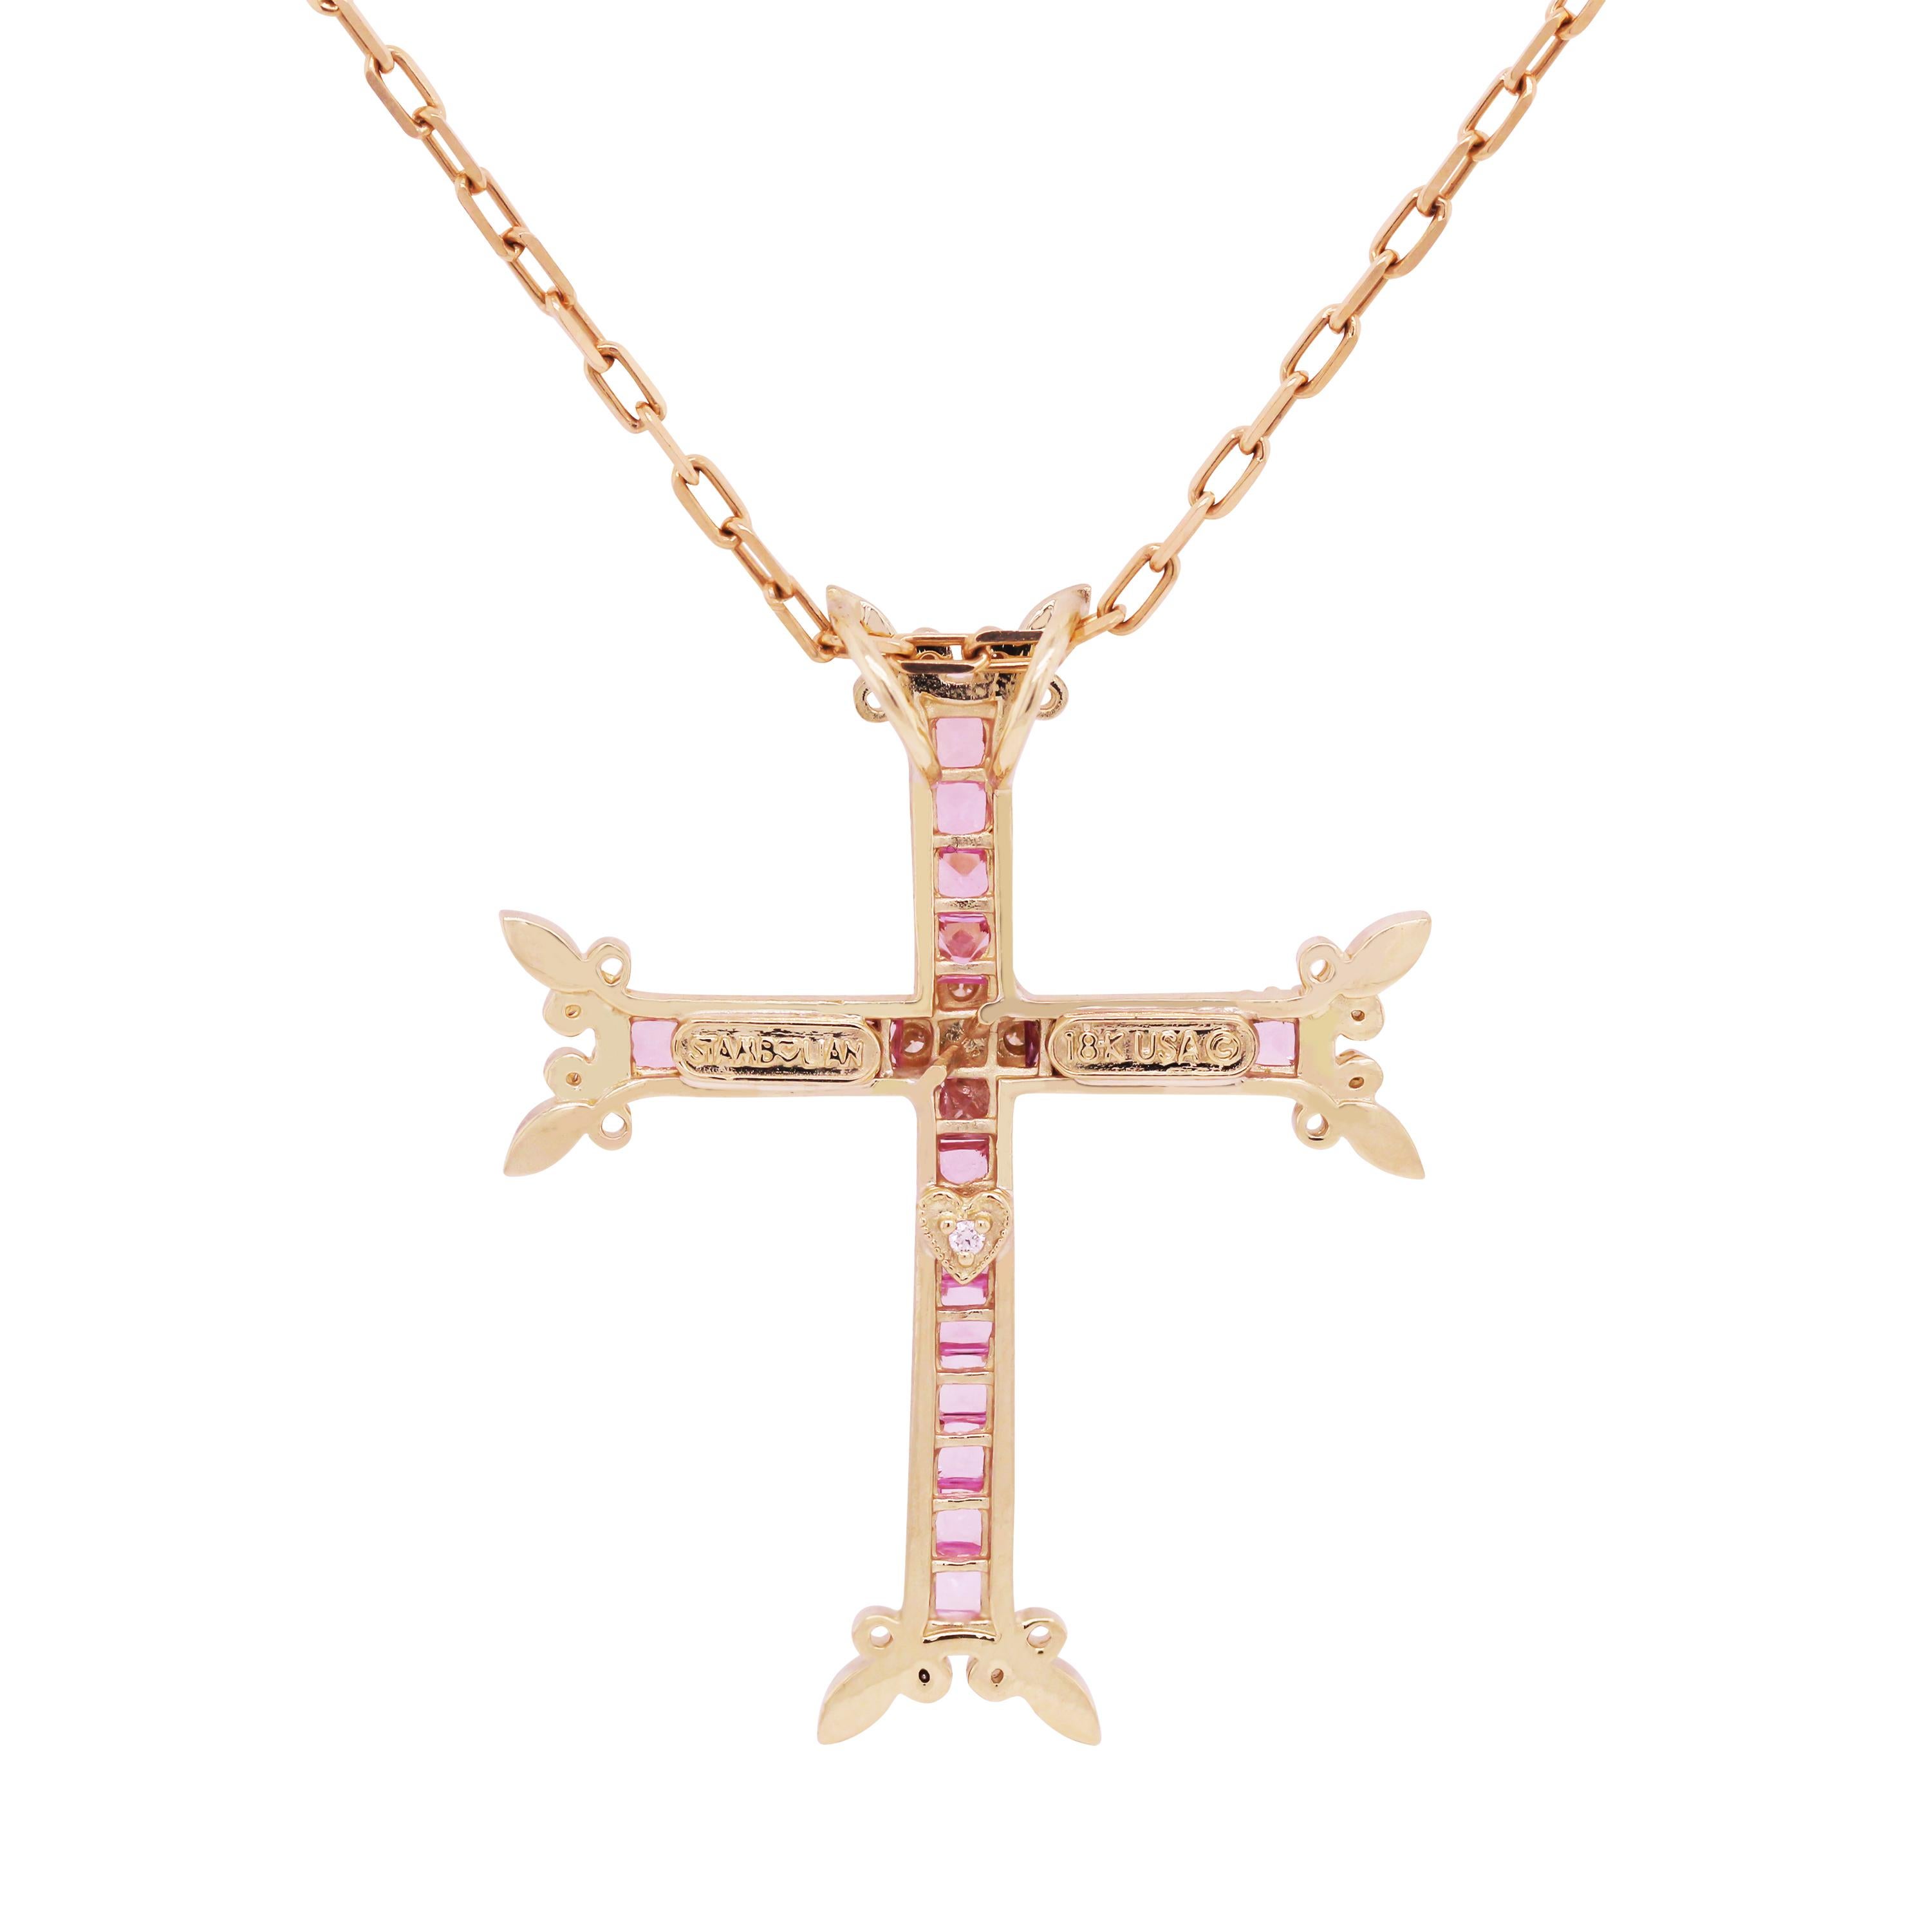 Halskette mit Kreuzanhänger von Stambolian, 18 Karat Gold Diamant im Prinzessinnenschliff Rosa Saphiren

Diese einzigartige Interpretation eines Kreuzes ist vom armenischen Kreuz inspiriert.

2,50 Karat Rosa Saphire Gesamtgewicht. Saphire sind alle